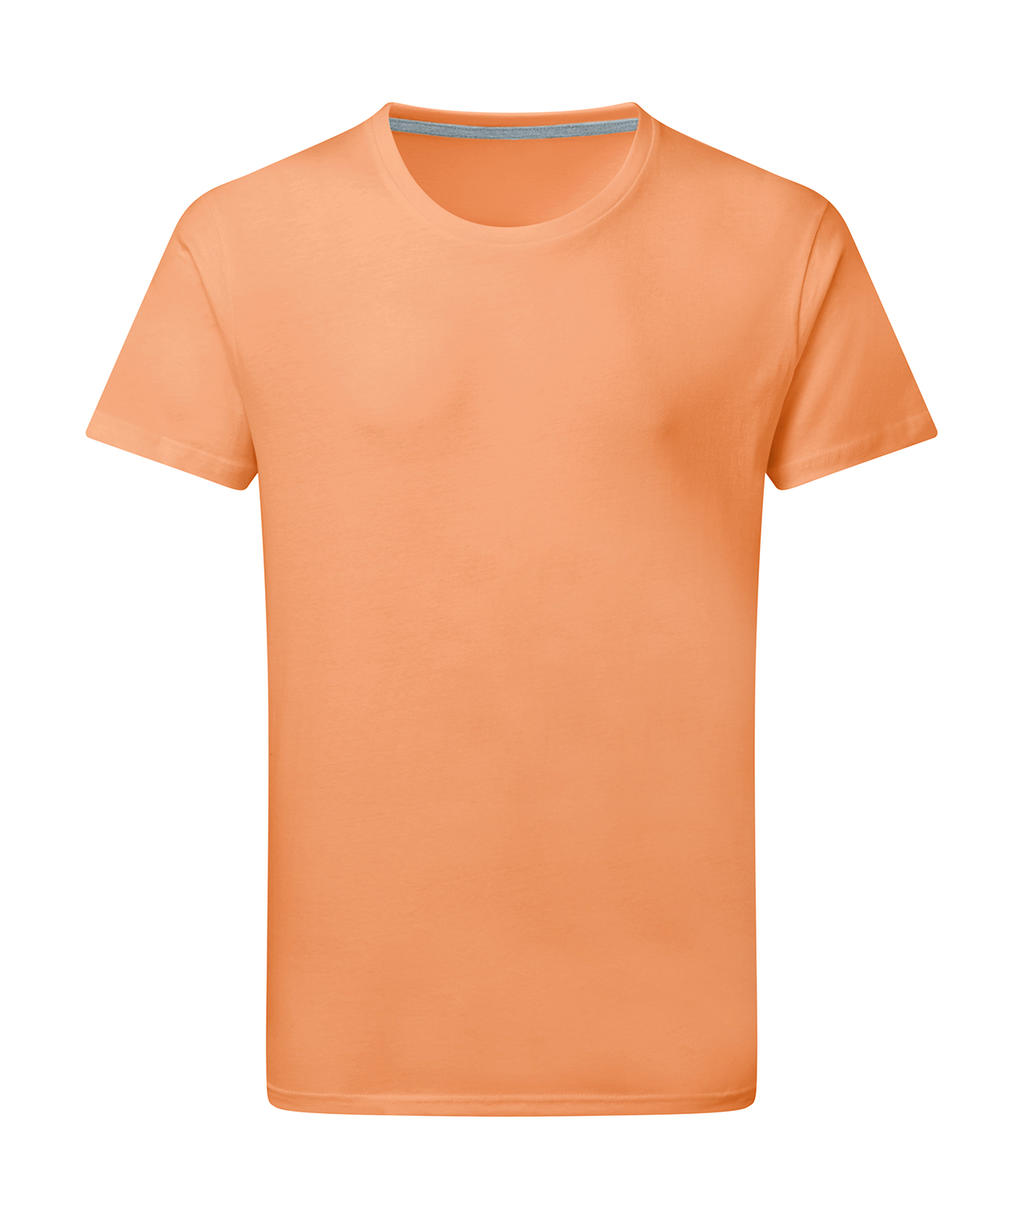 Dokonale potlačiteľné tričko bez štítku - cantaloupe